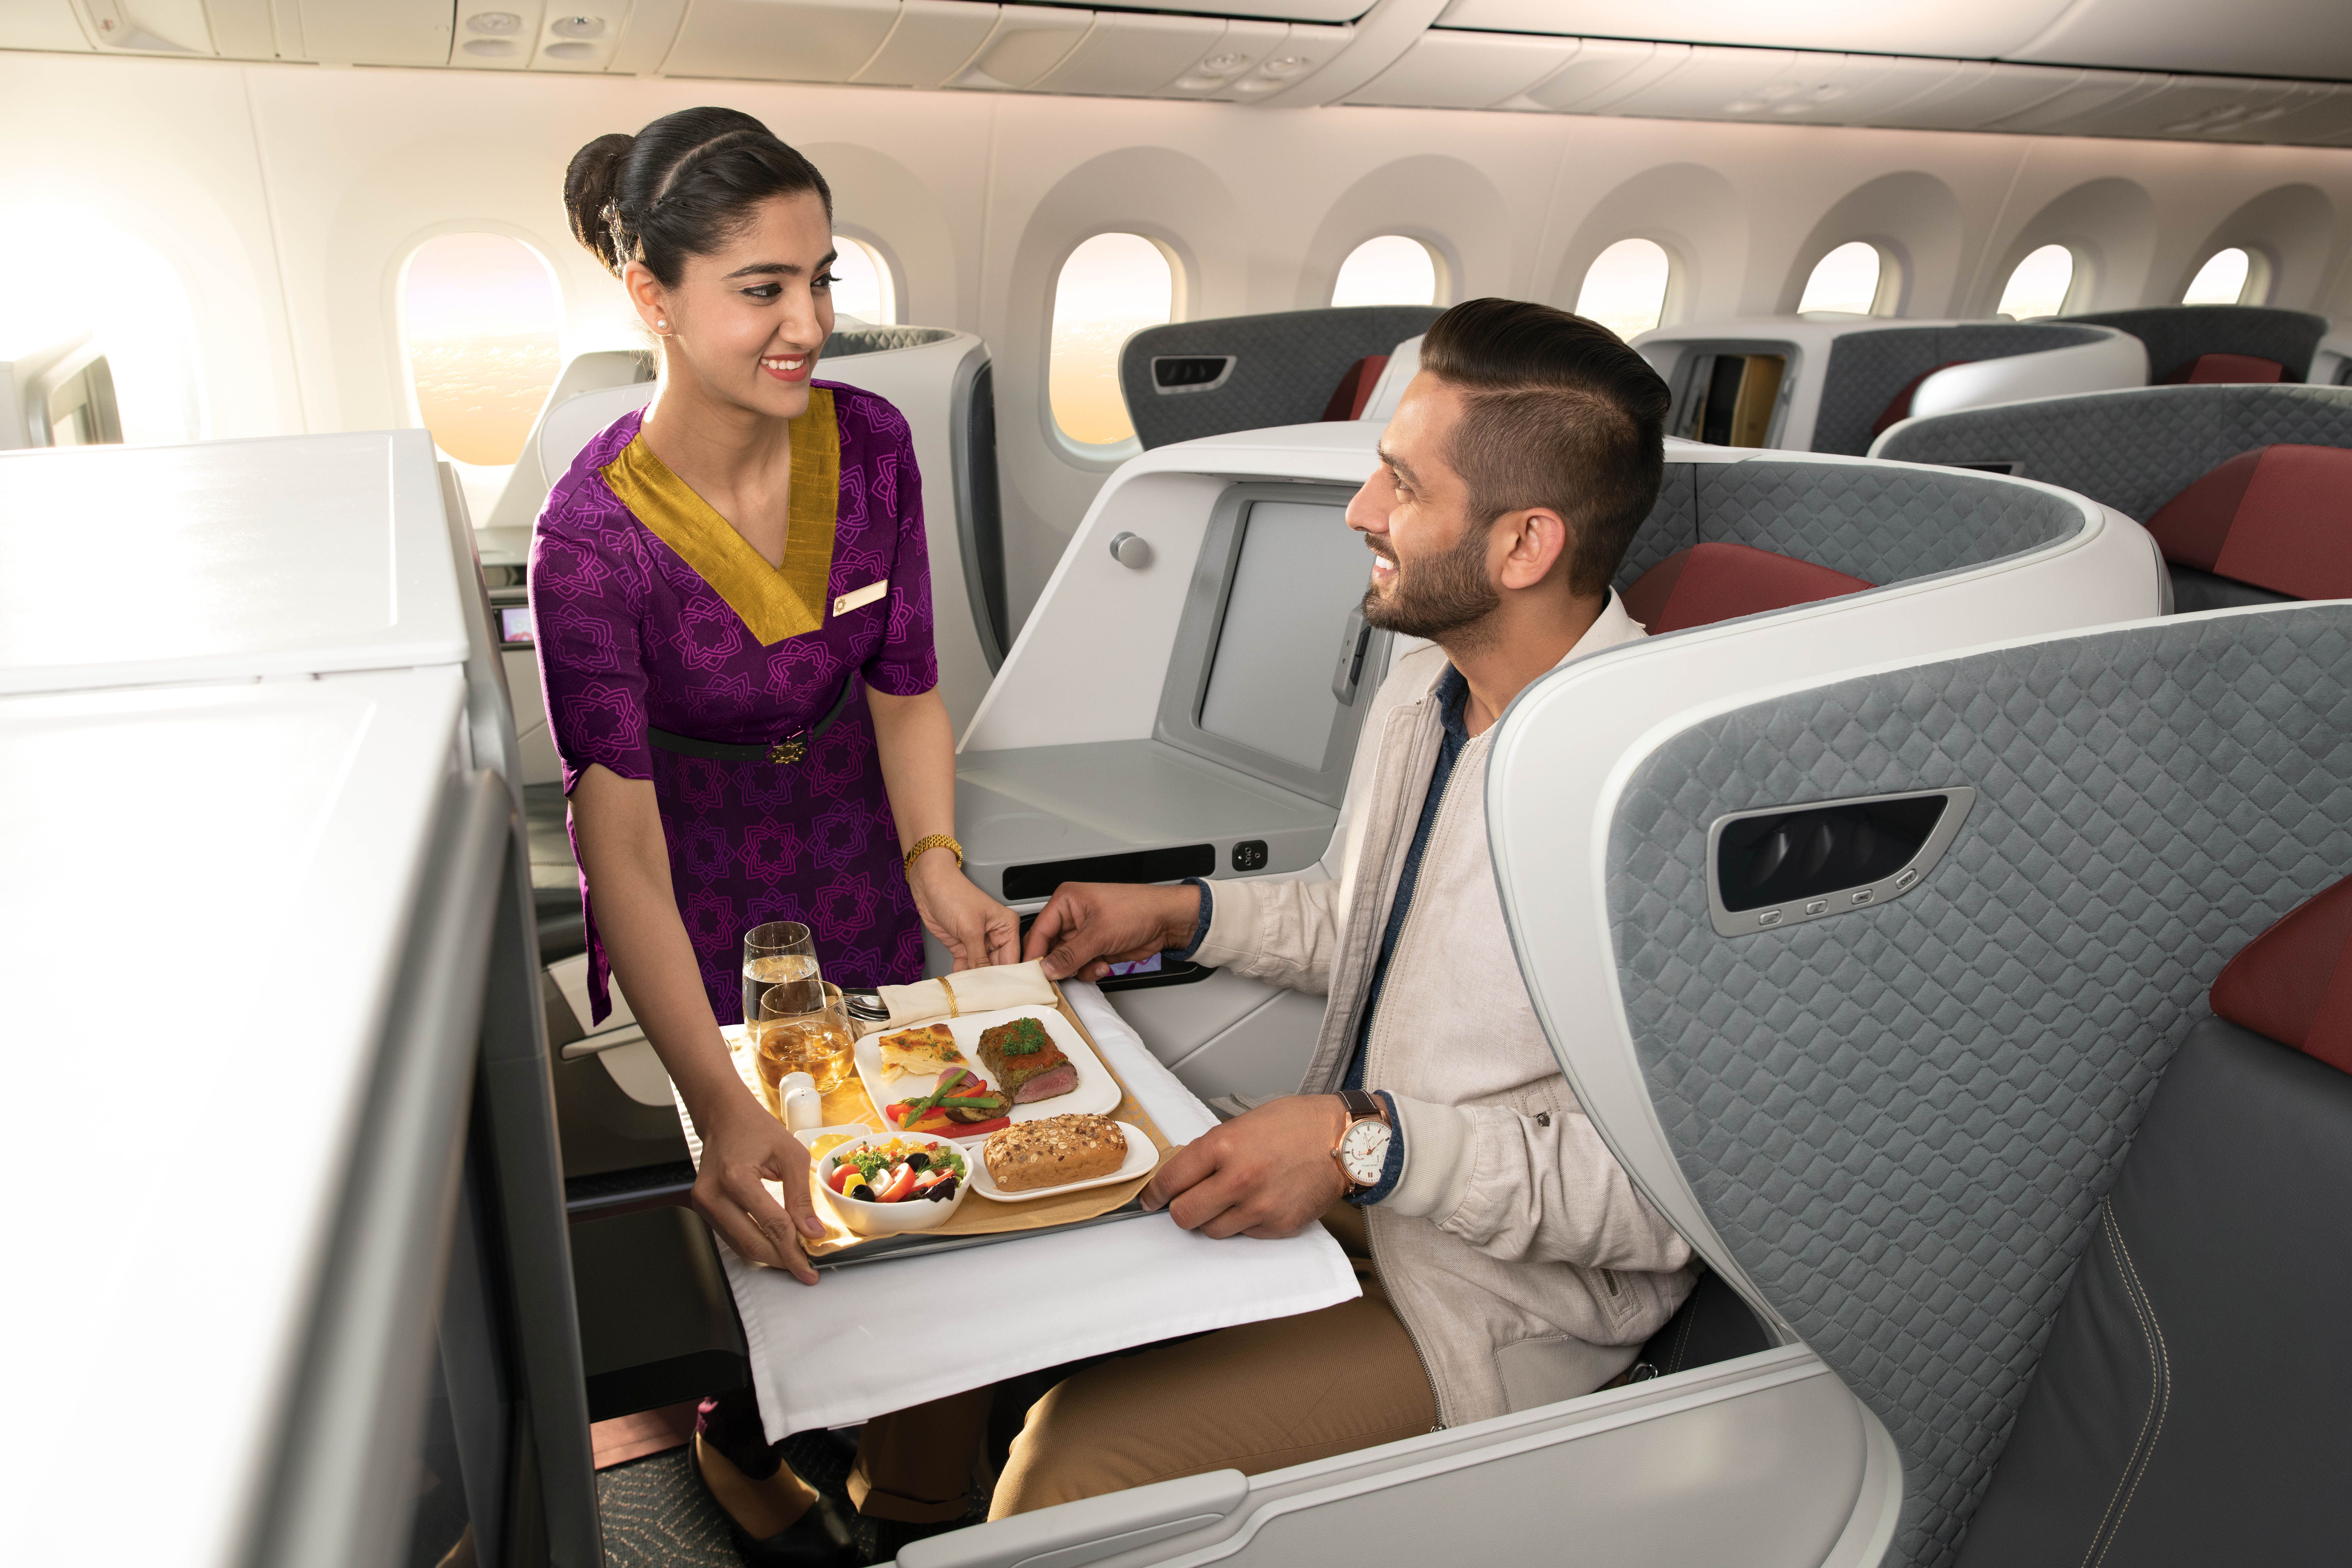 A Vistara flight attendant serving a meal to a passenger in business class.